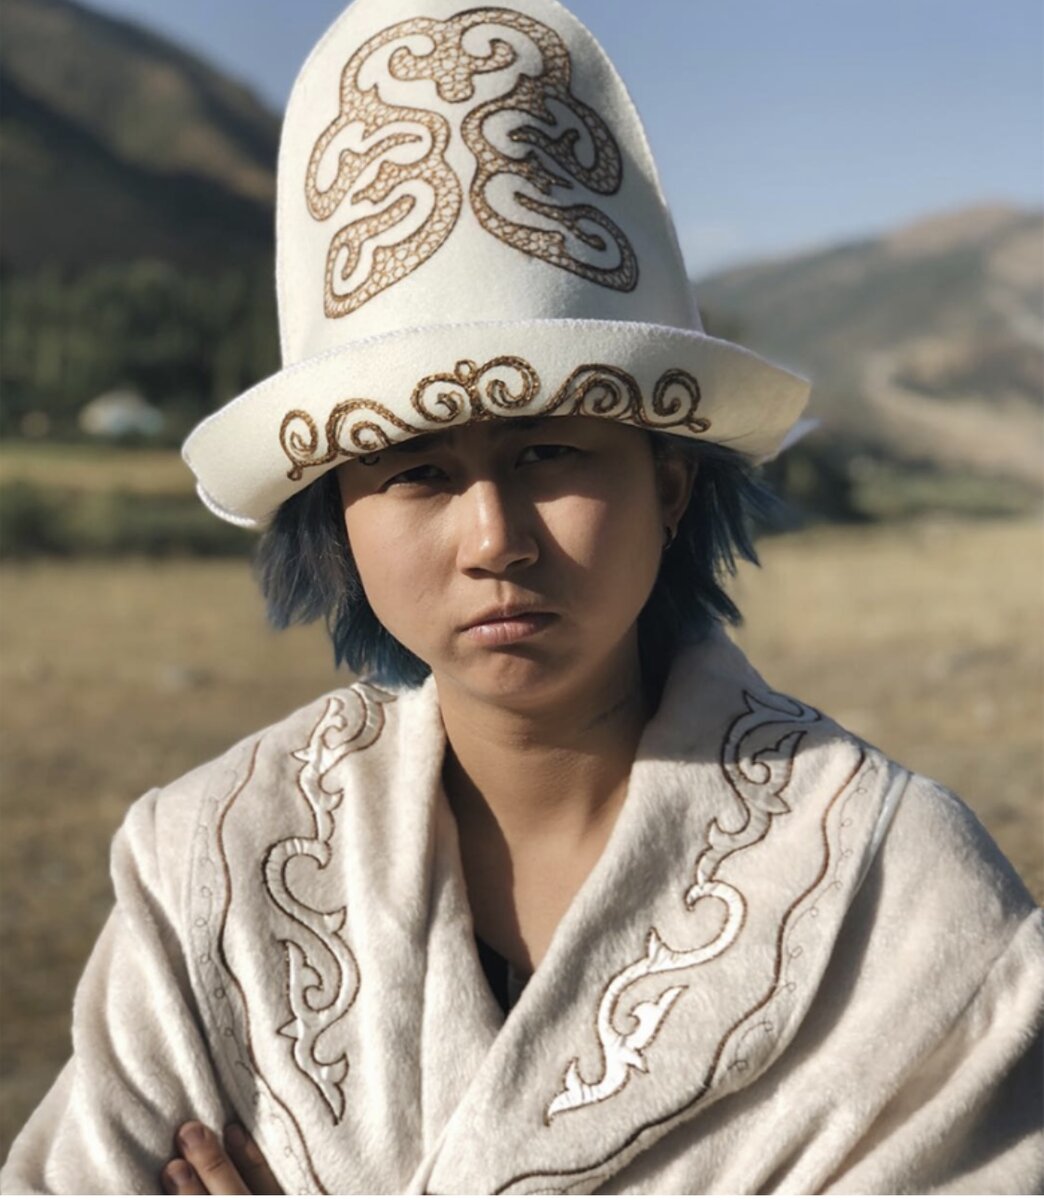 Киргизы большая. Кыргызстан. Нац. Головной убор Элечек.. Бакай калпак киргизы. Калпак кыргызский национальный головной убор. Шапка киргиза.